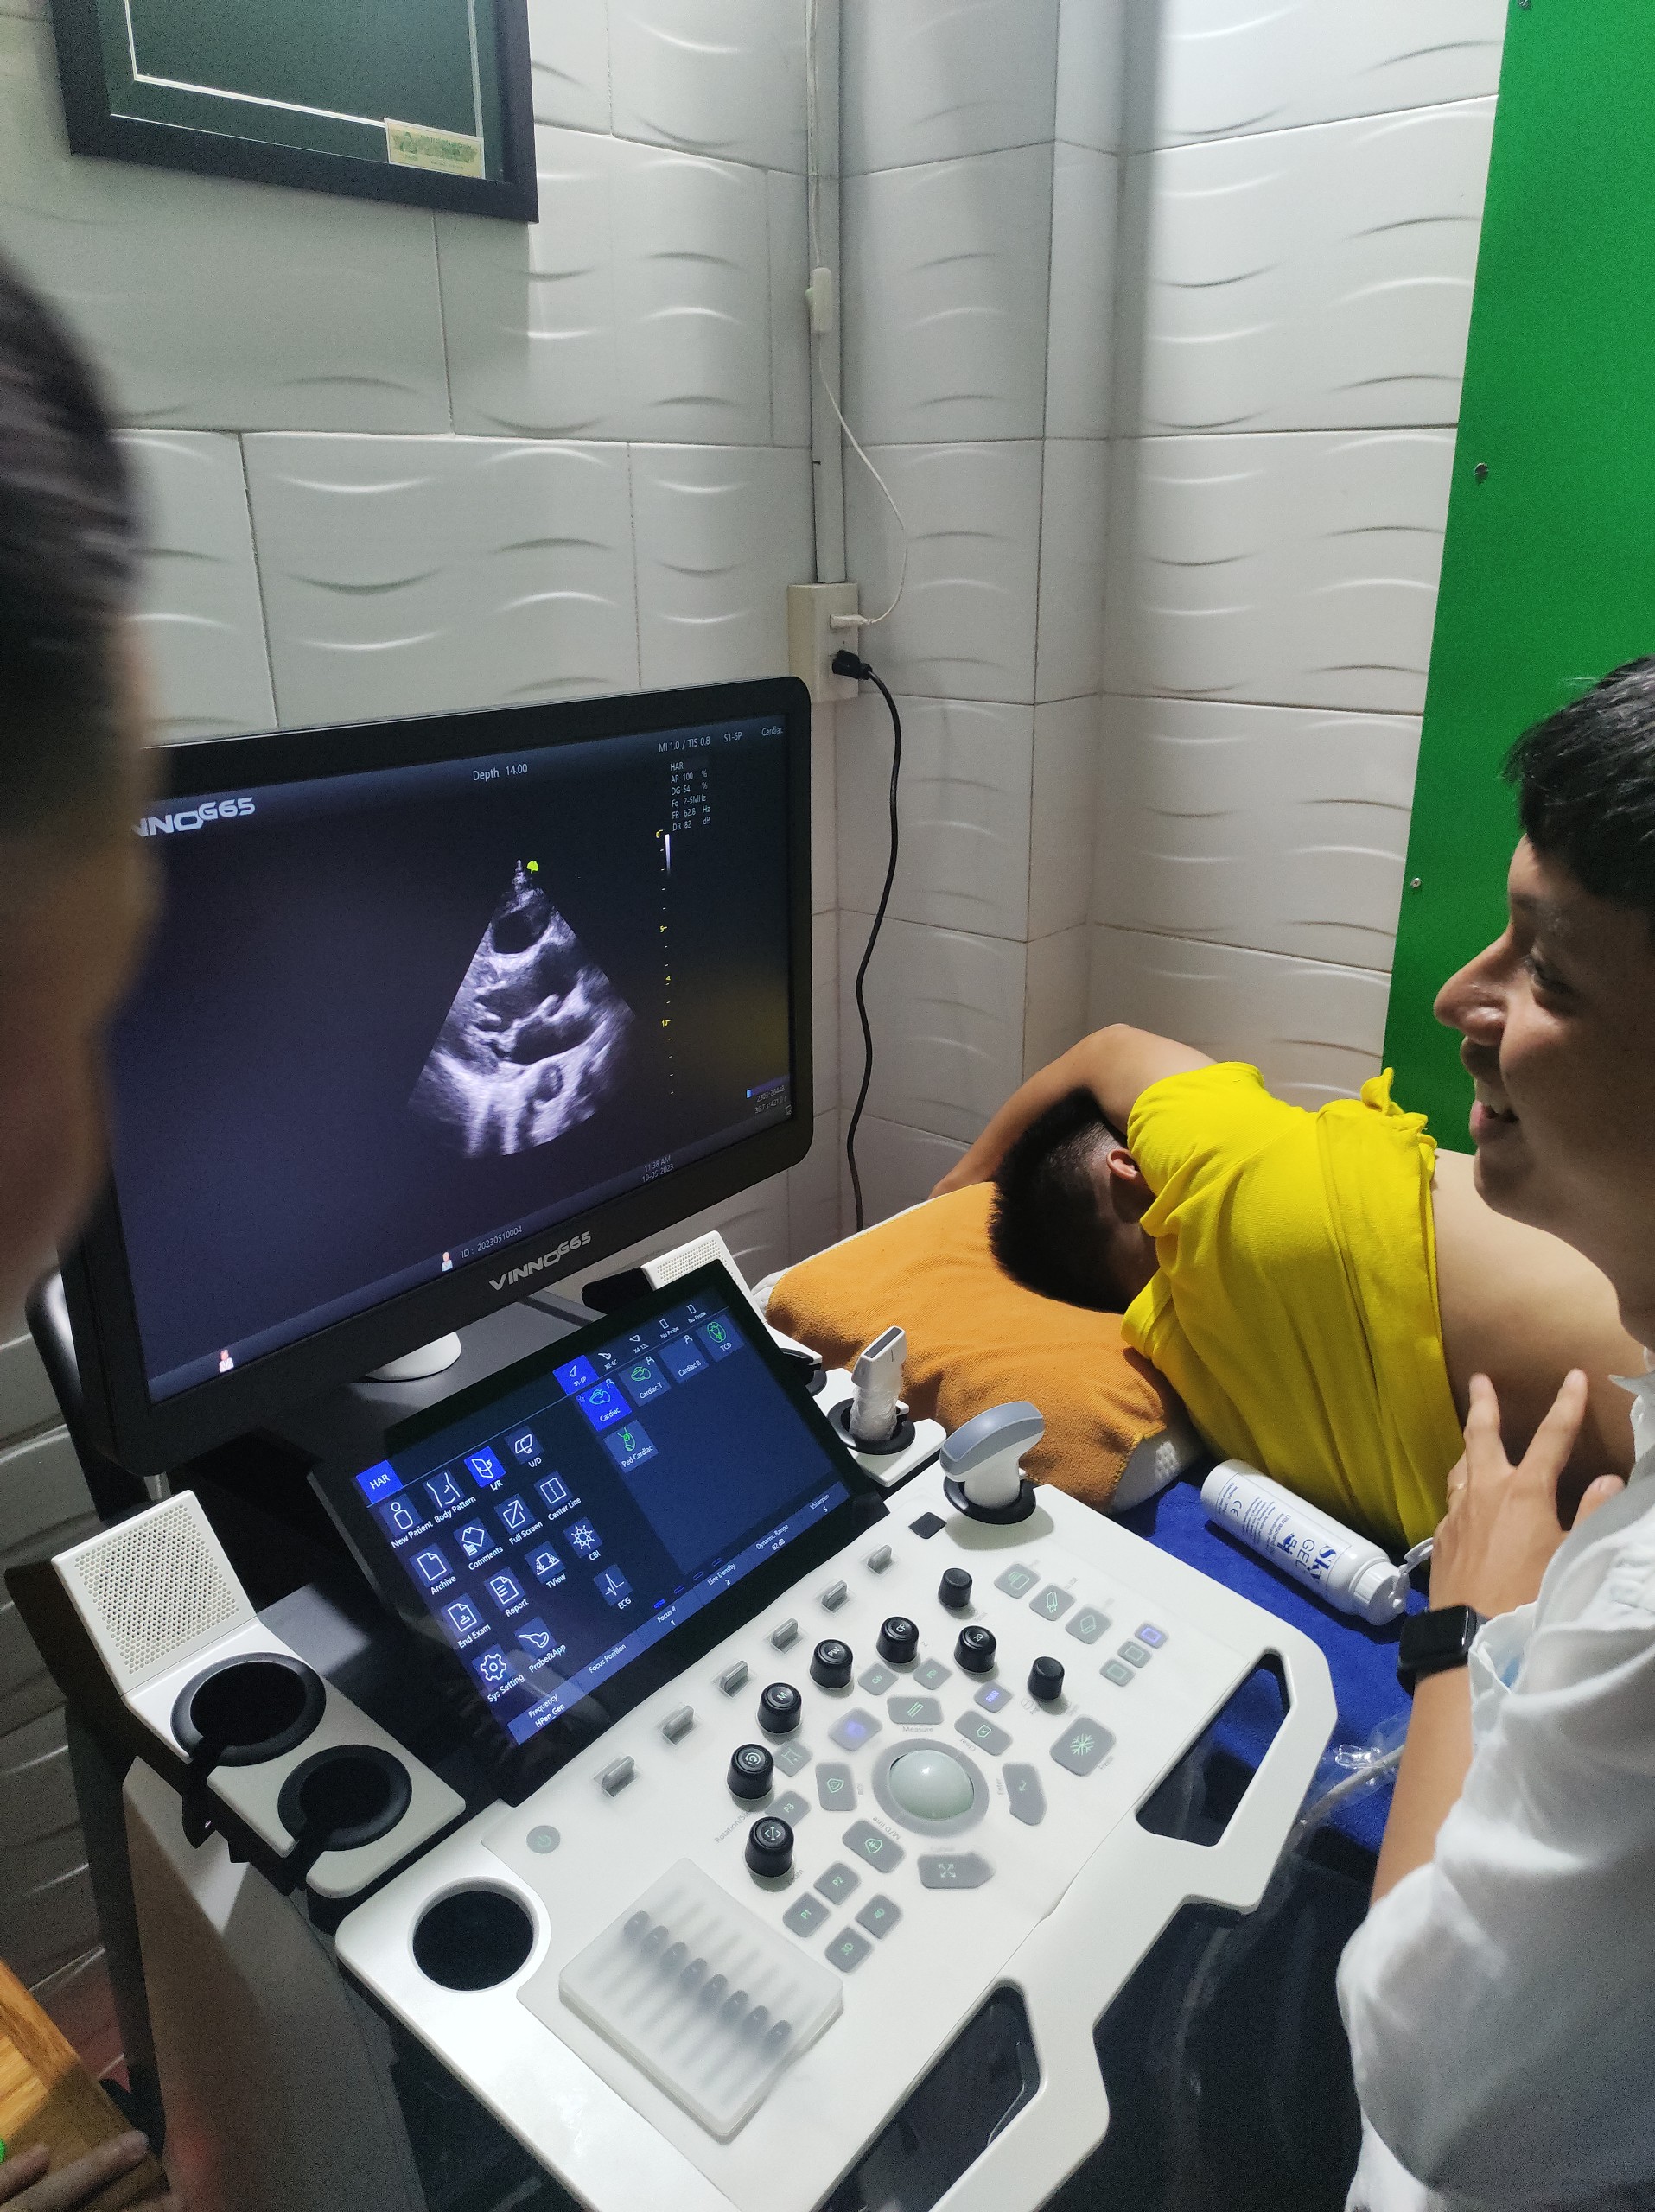 lắp máy siêu âm vinno g65 cao cấp cho bác sĩ tại Bình Định